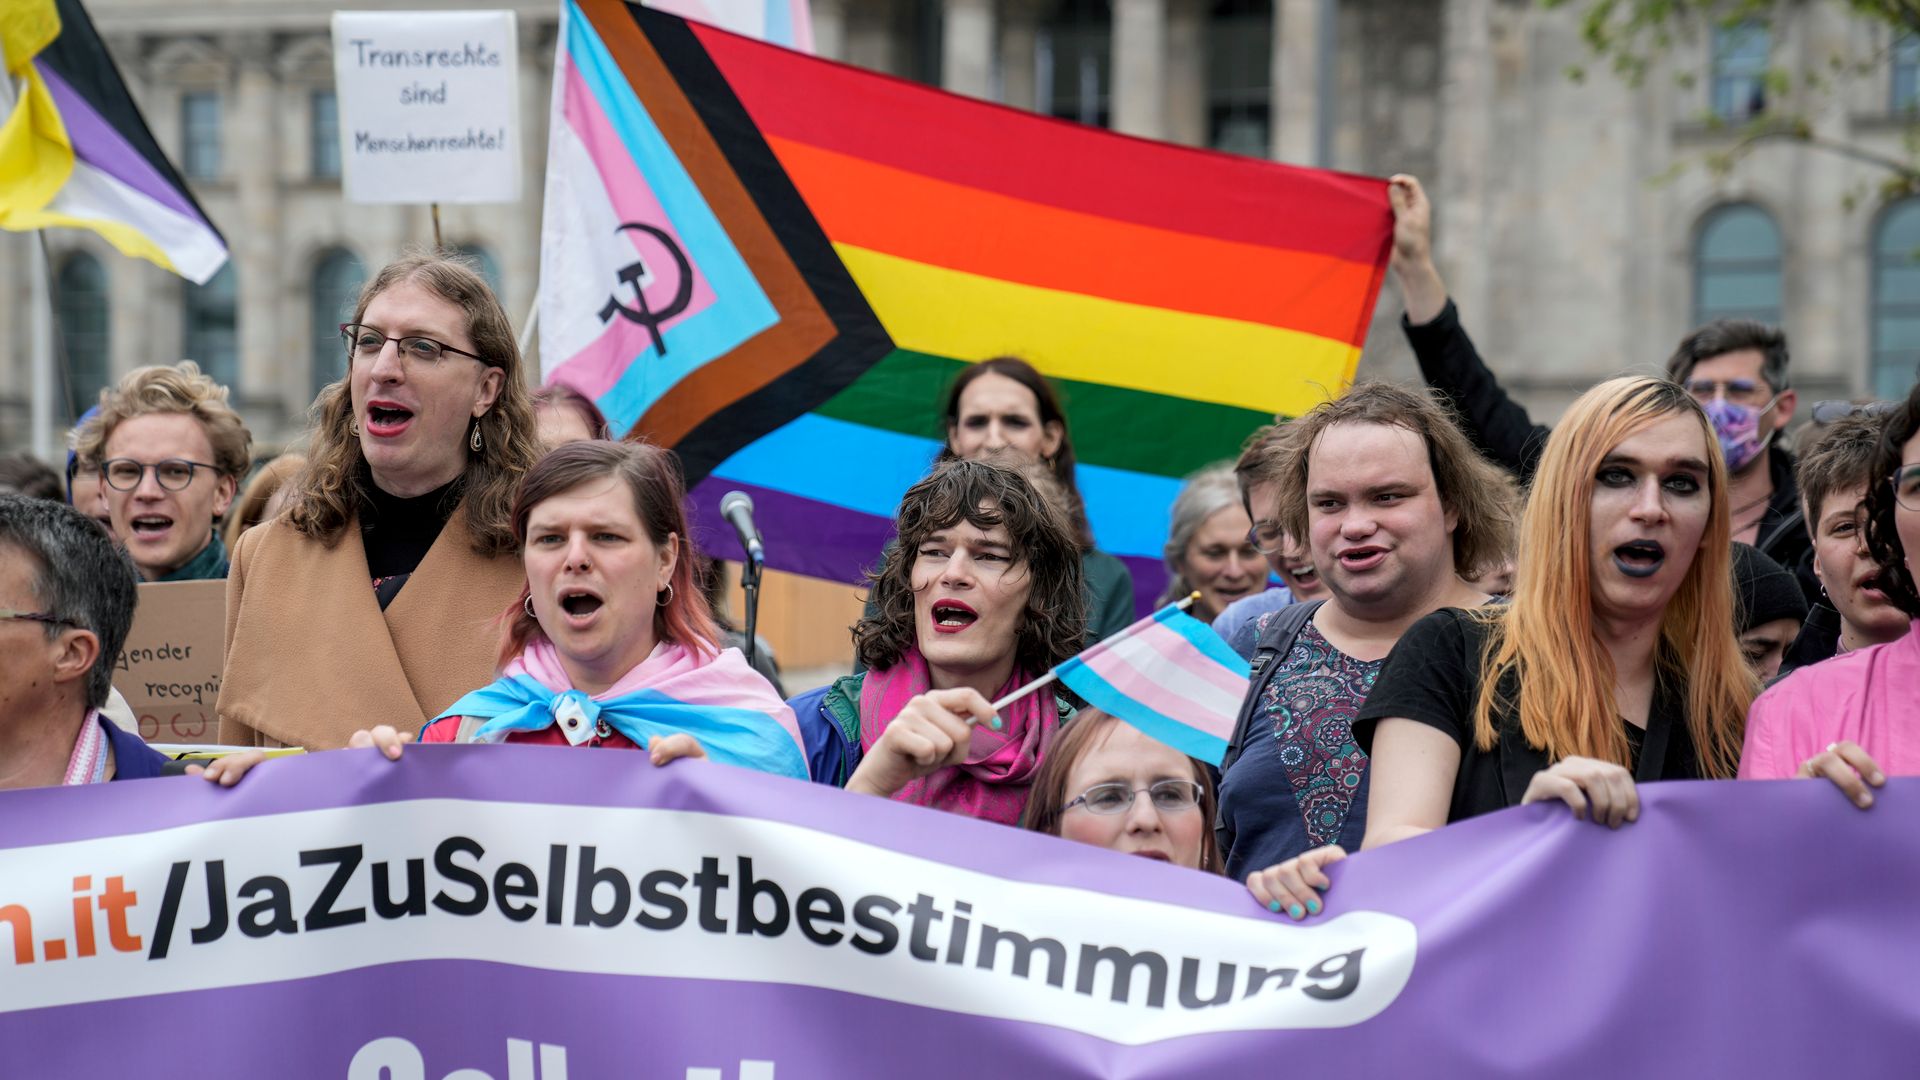 selbstbestimmungsgesetz vom bundestag beschlossen: mehr rechte für trans personen